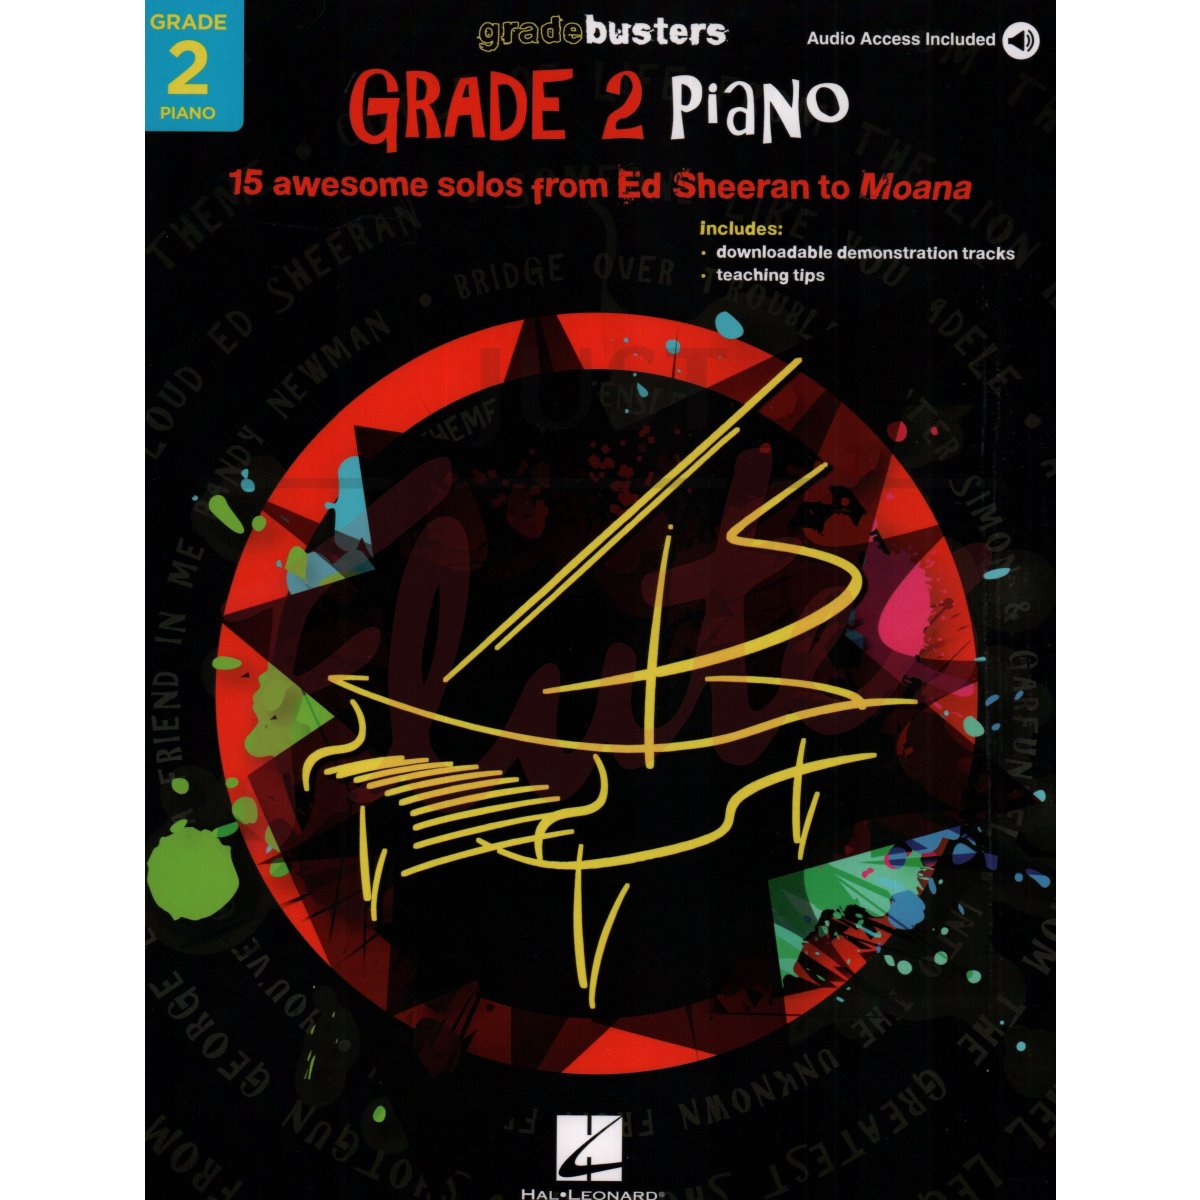 Gradebusters Grade 2 - Piano